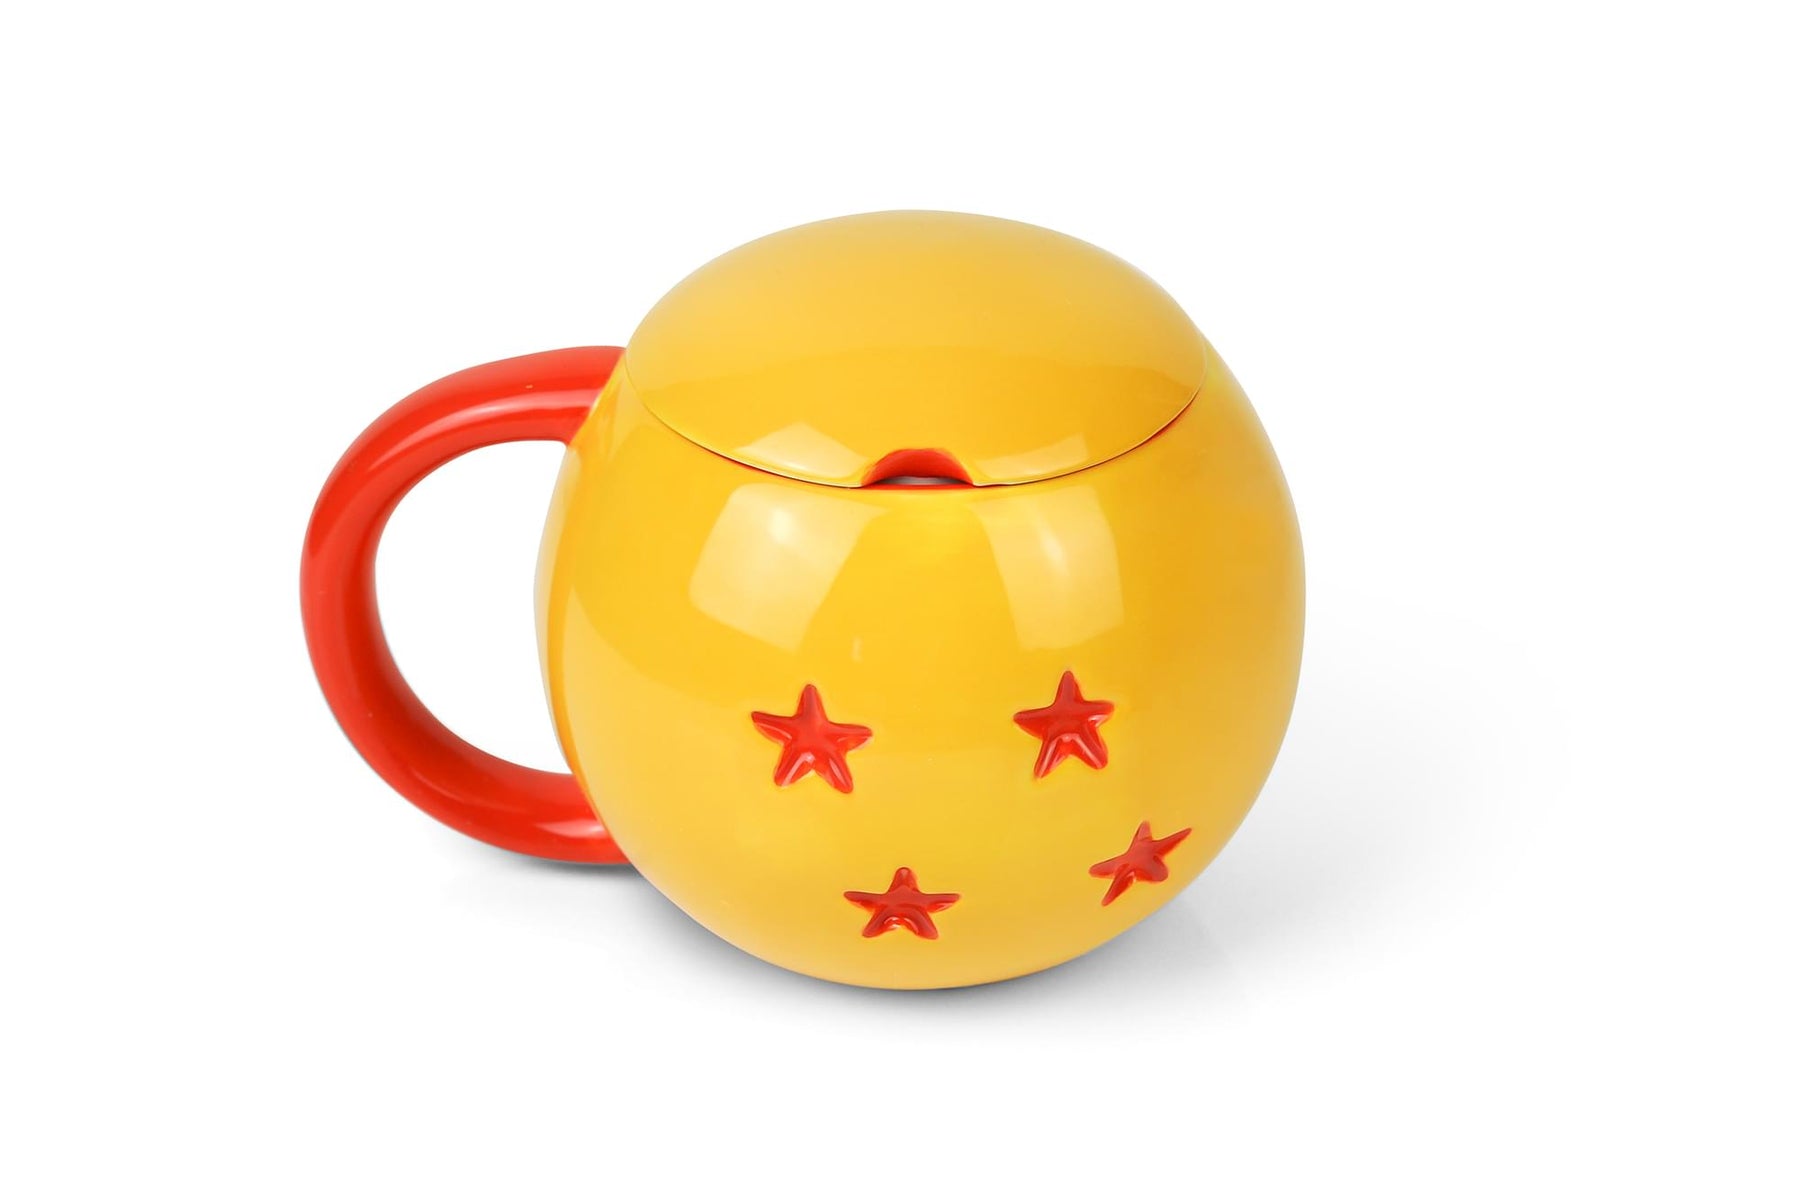 Dragon Ball Z 4-Star Dragon Ball Mug | Ceramic Mug With Lid | Holds 16 Ounces